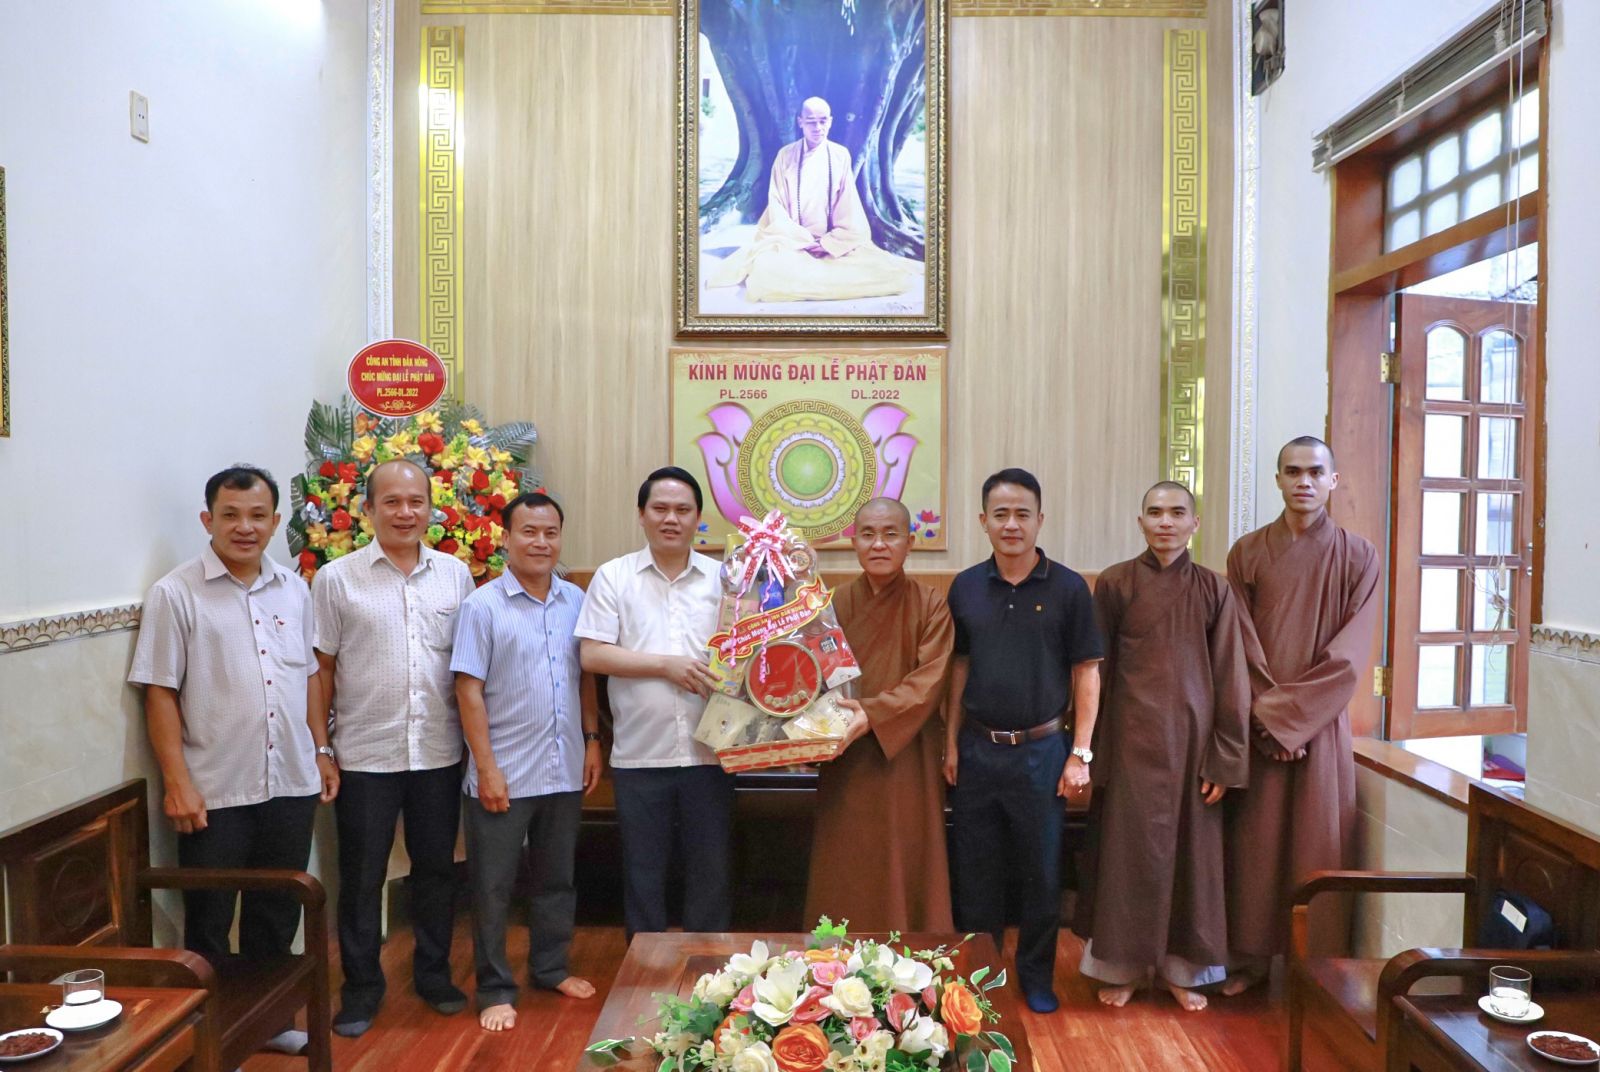 Lãnh đạo Công an tỉnh Đăk Nông cùng các Ban, ngành chúc mừng Đại lễ Phật đản đến chùa Pháp Hoa.